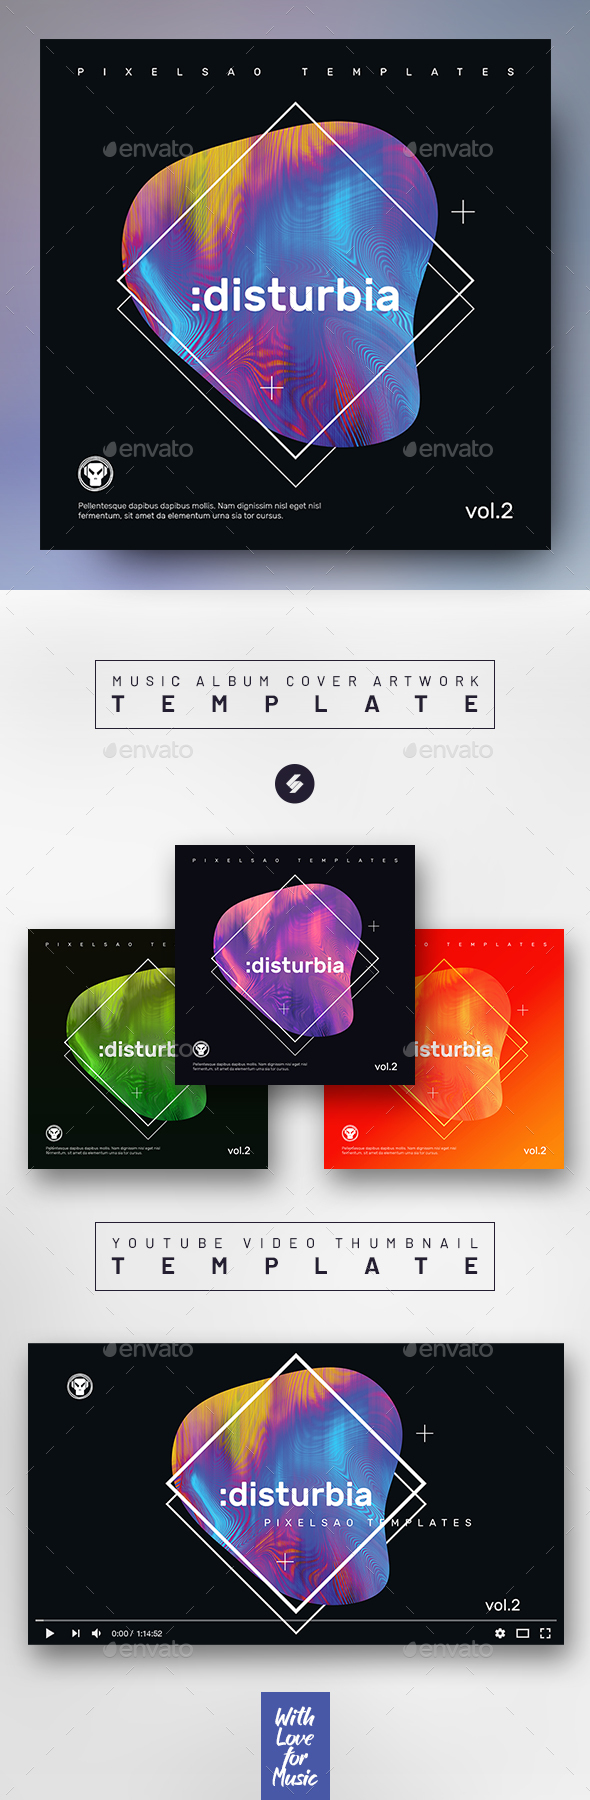 Disturbia vol2 – Music Album Cover Artwork / Video Thumbnail Template